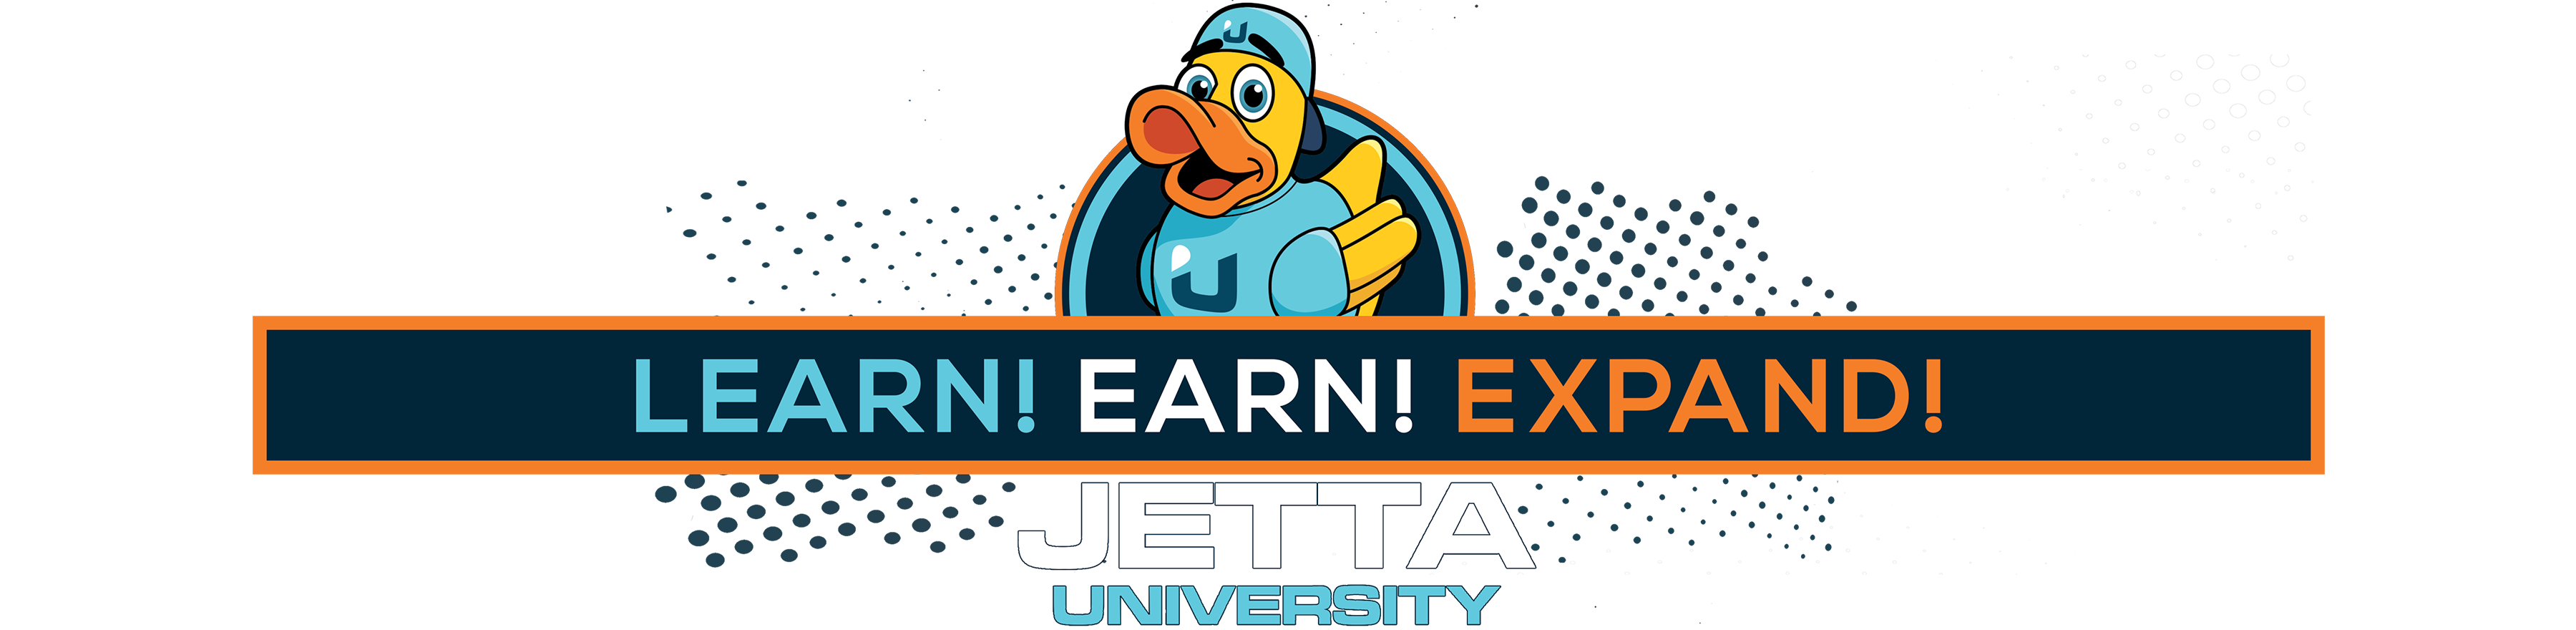 Jetta University